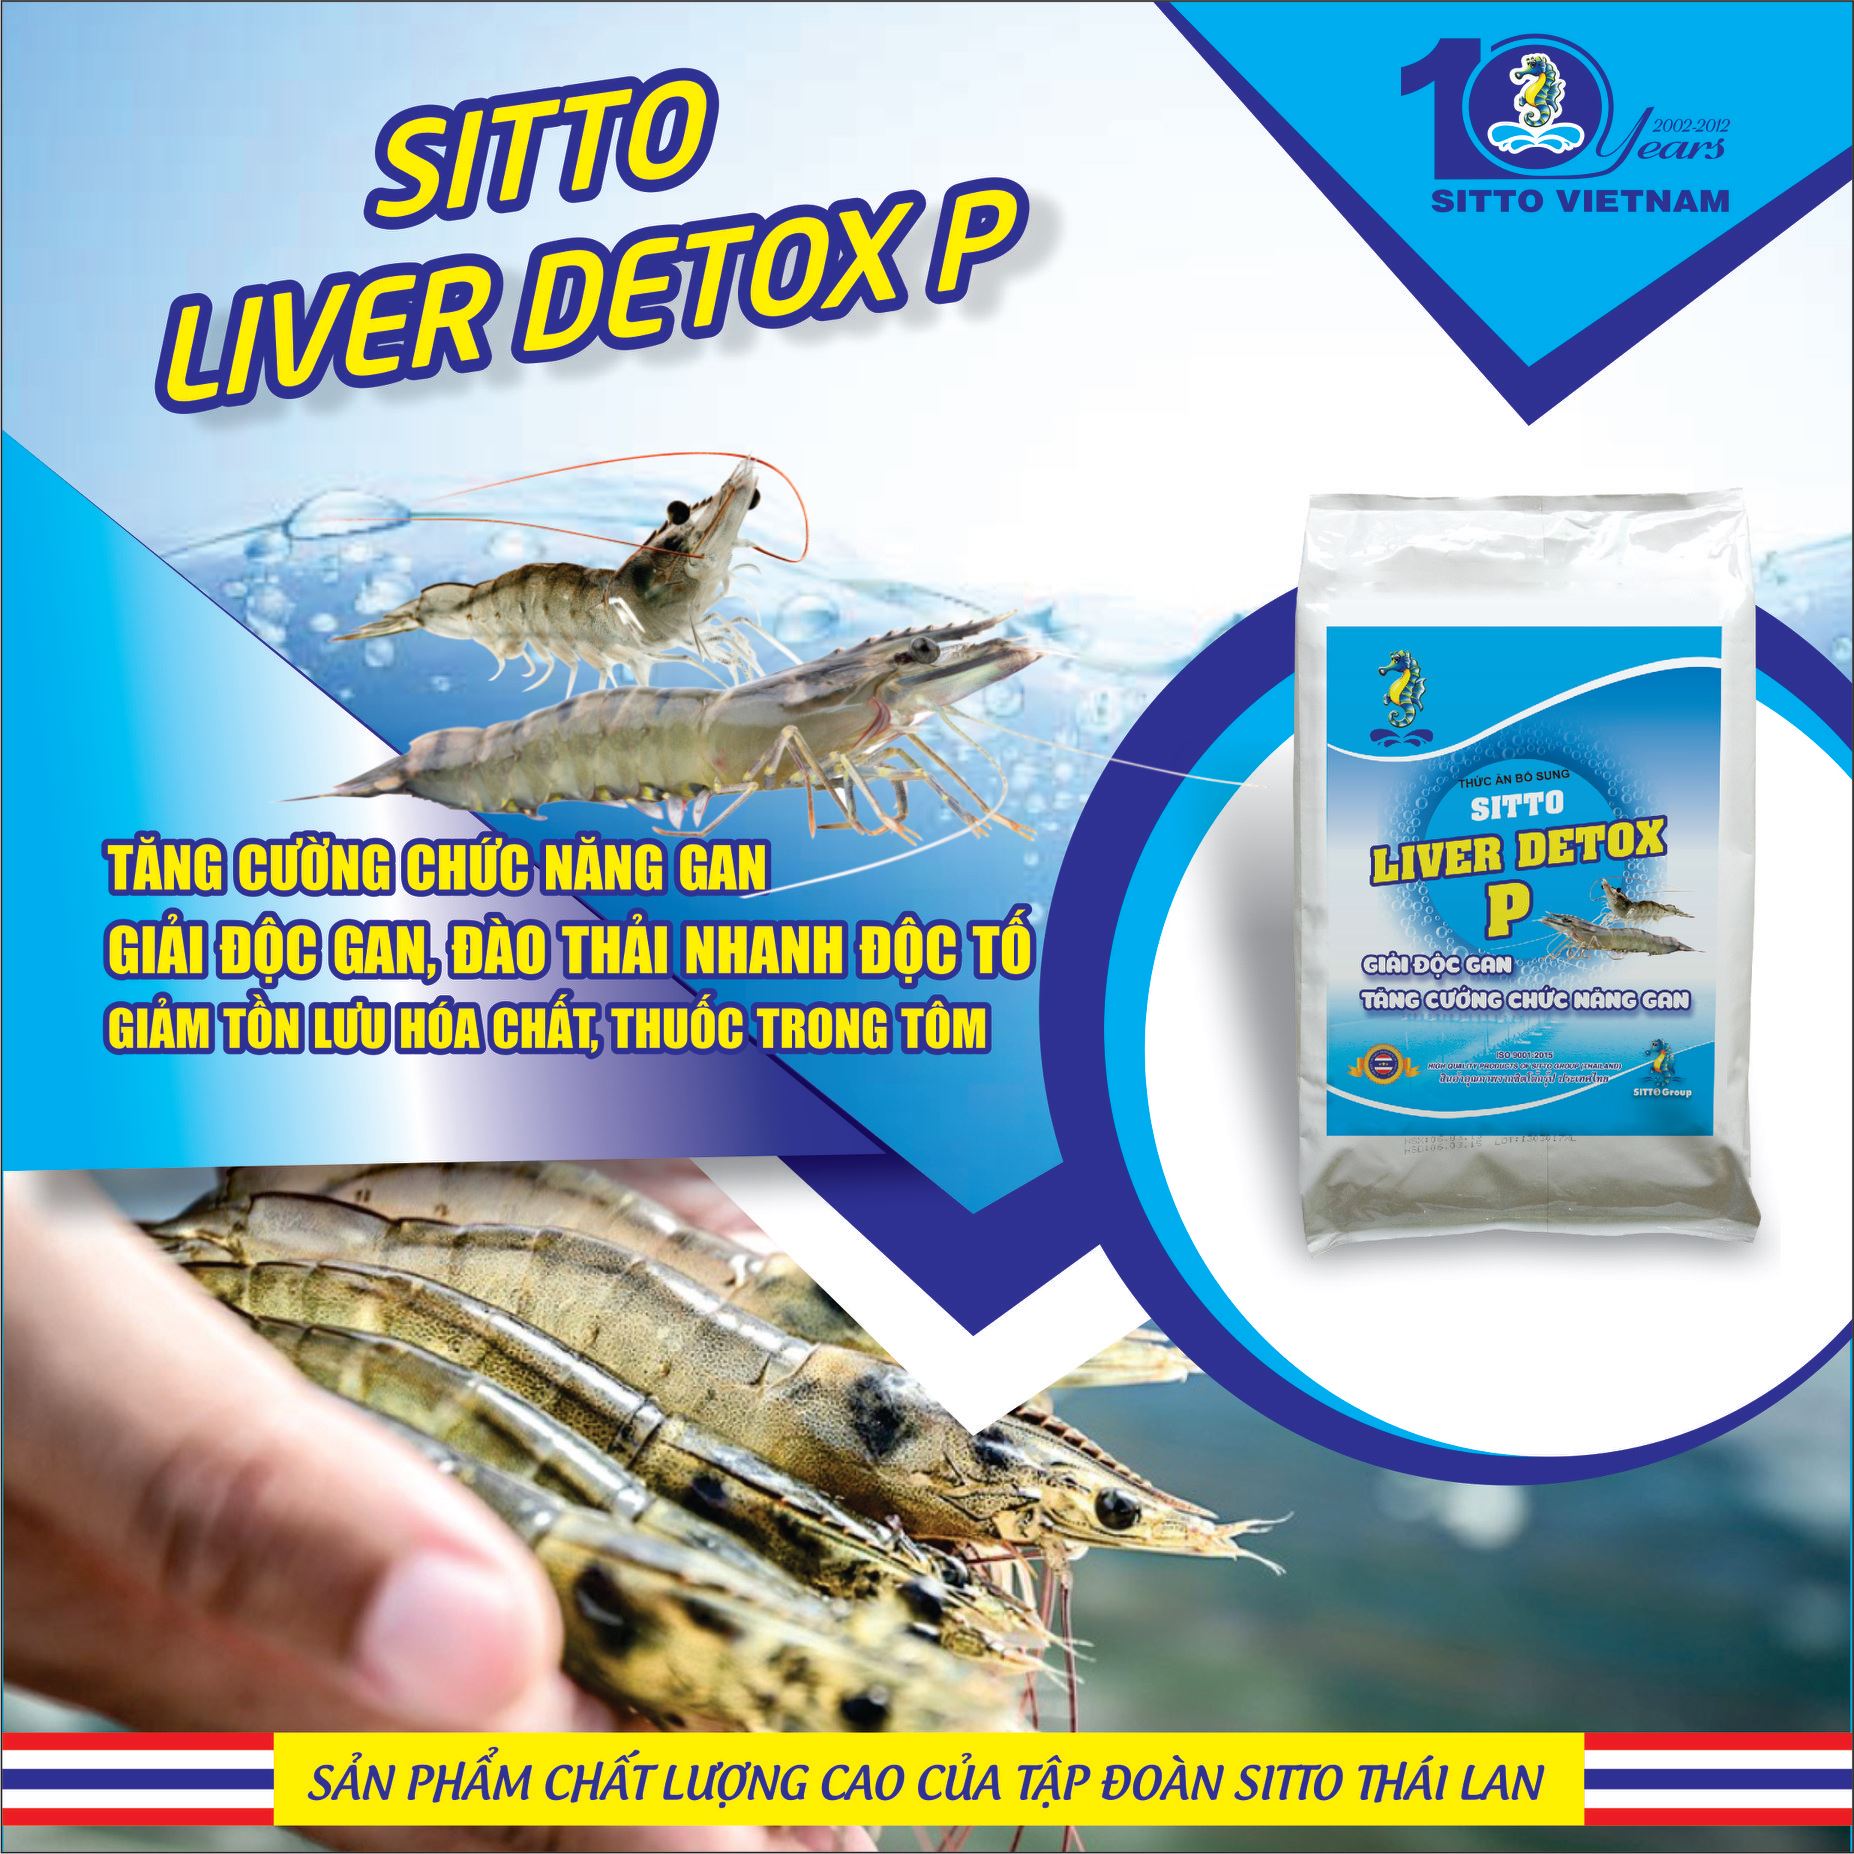 Sitto Liver Detox P (Gói 500g) - giải độc gan, đào thải độc tố nhanh